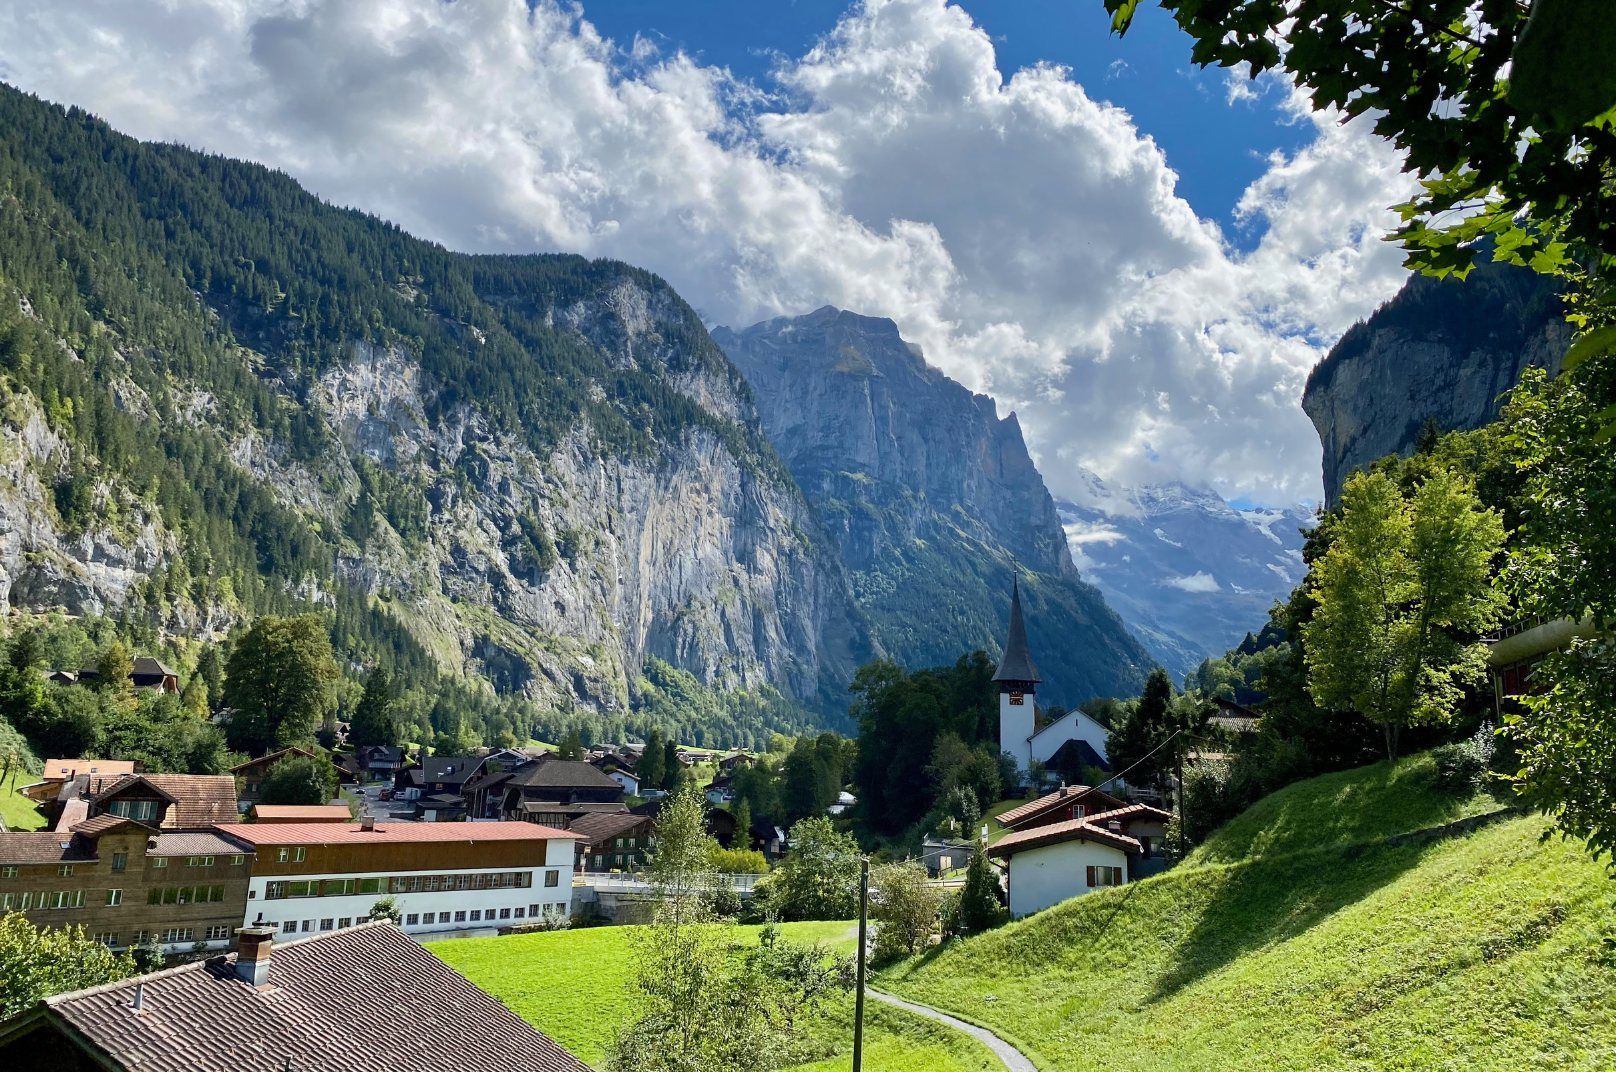 day trip to Lauterbrunnen, Switzerland